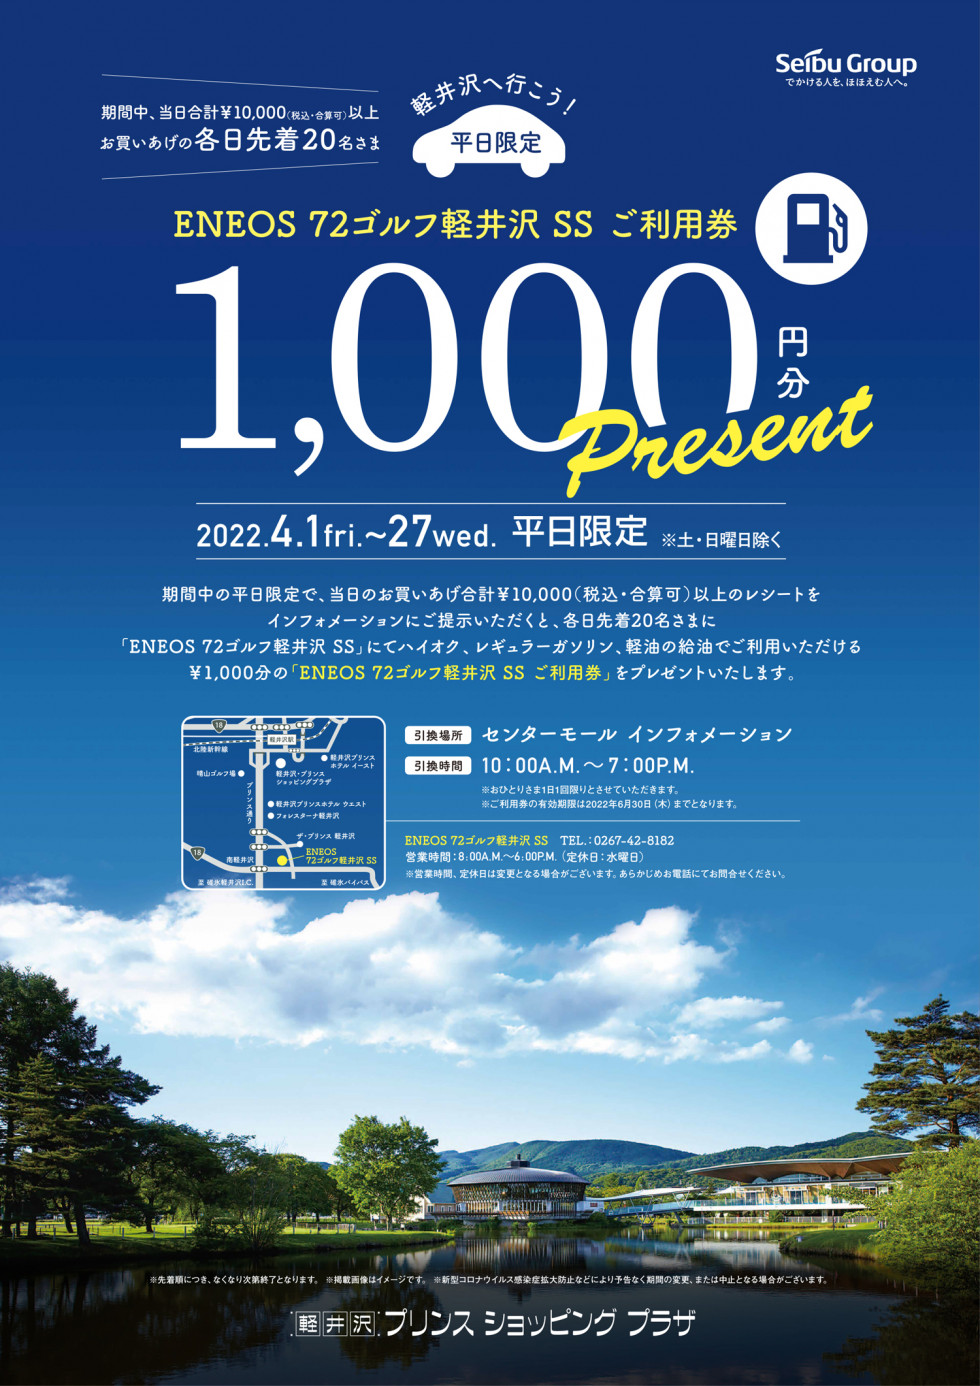 「ENEOS 72ゴルフ軽井沢 SS」 ￥1,000分ご利用券プレゼント企画